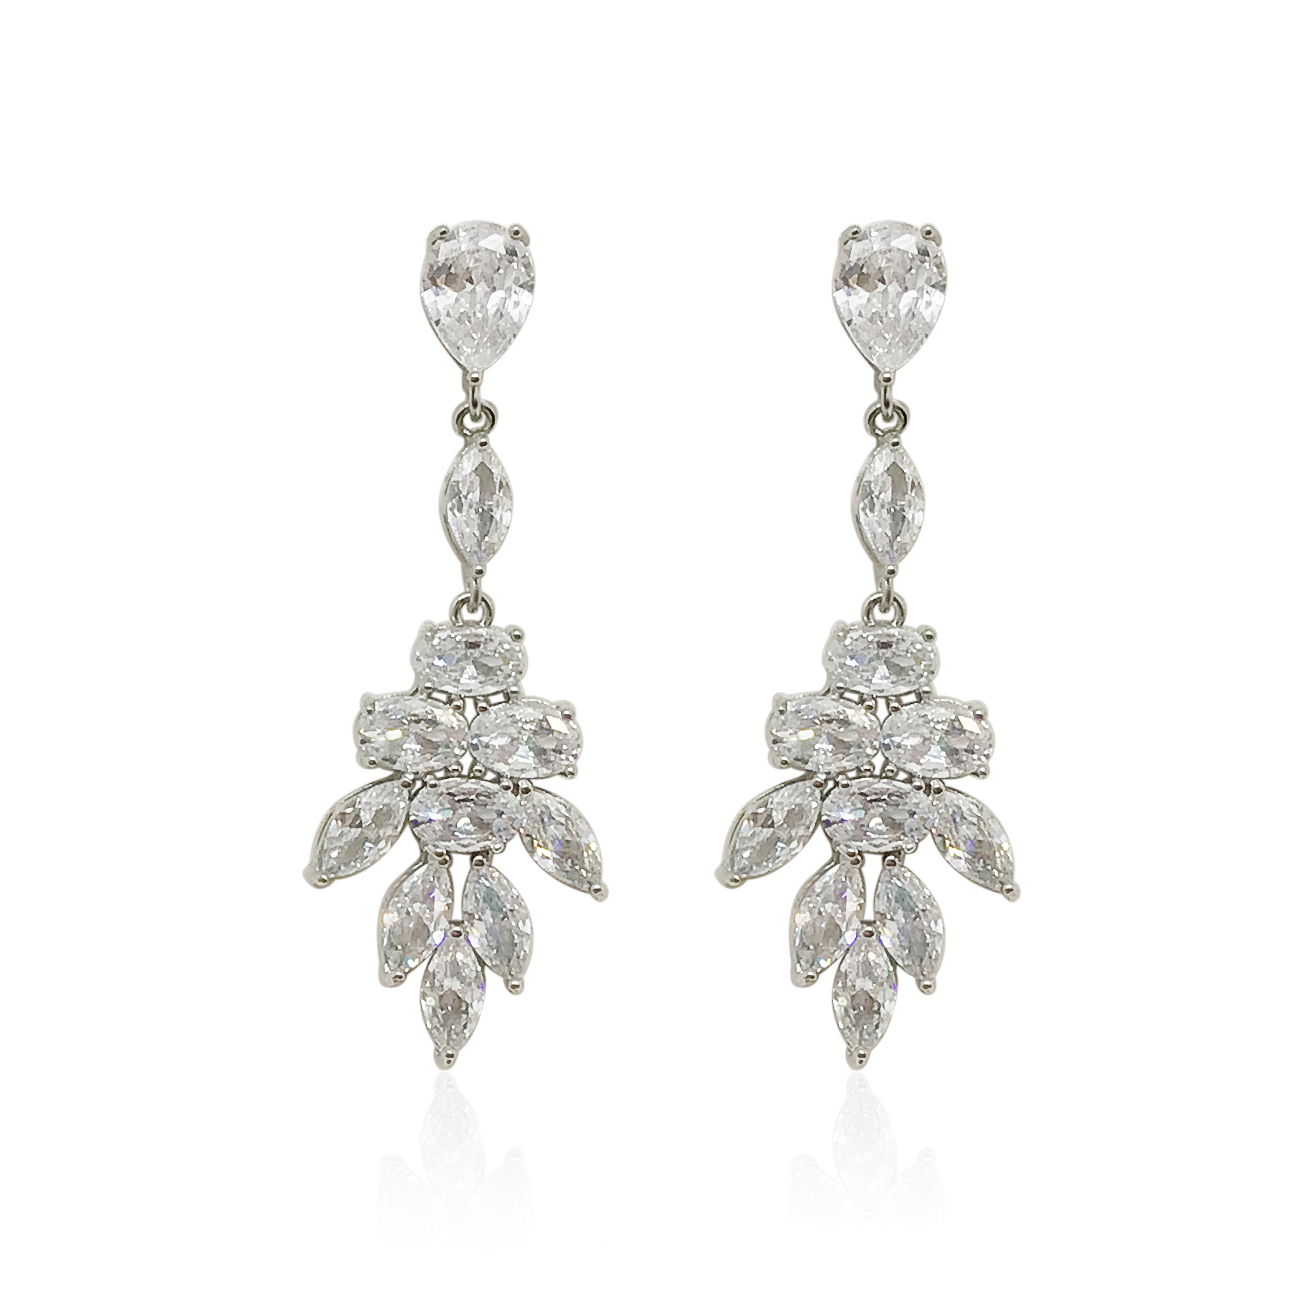 Crystal Leaf Drop Earrings|Lila|Jeanette Maree|Shop Online